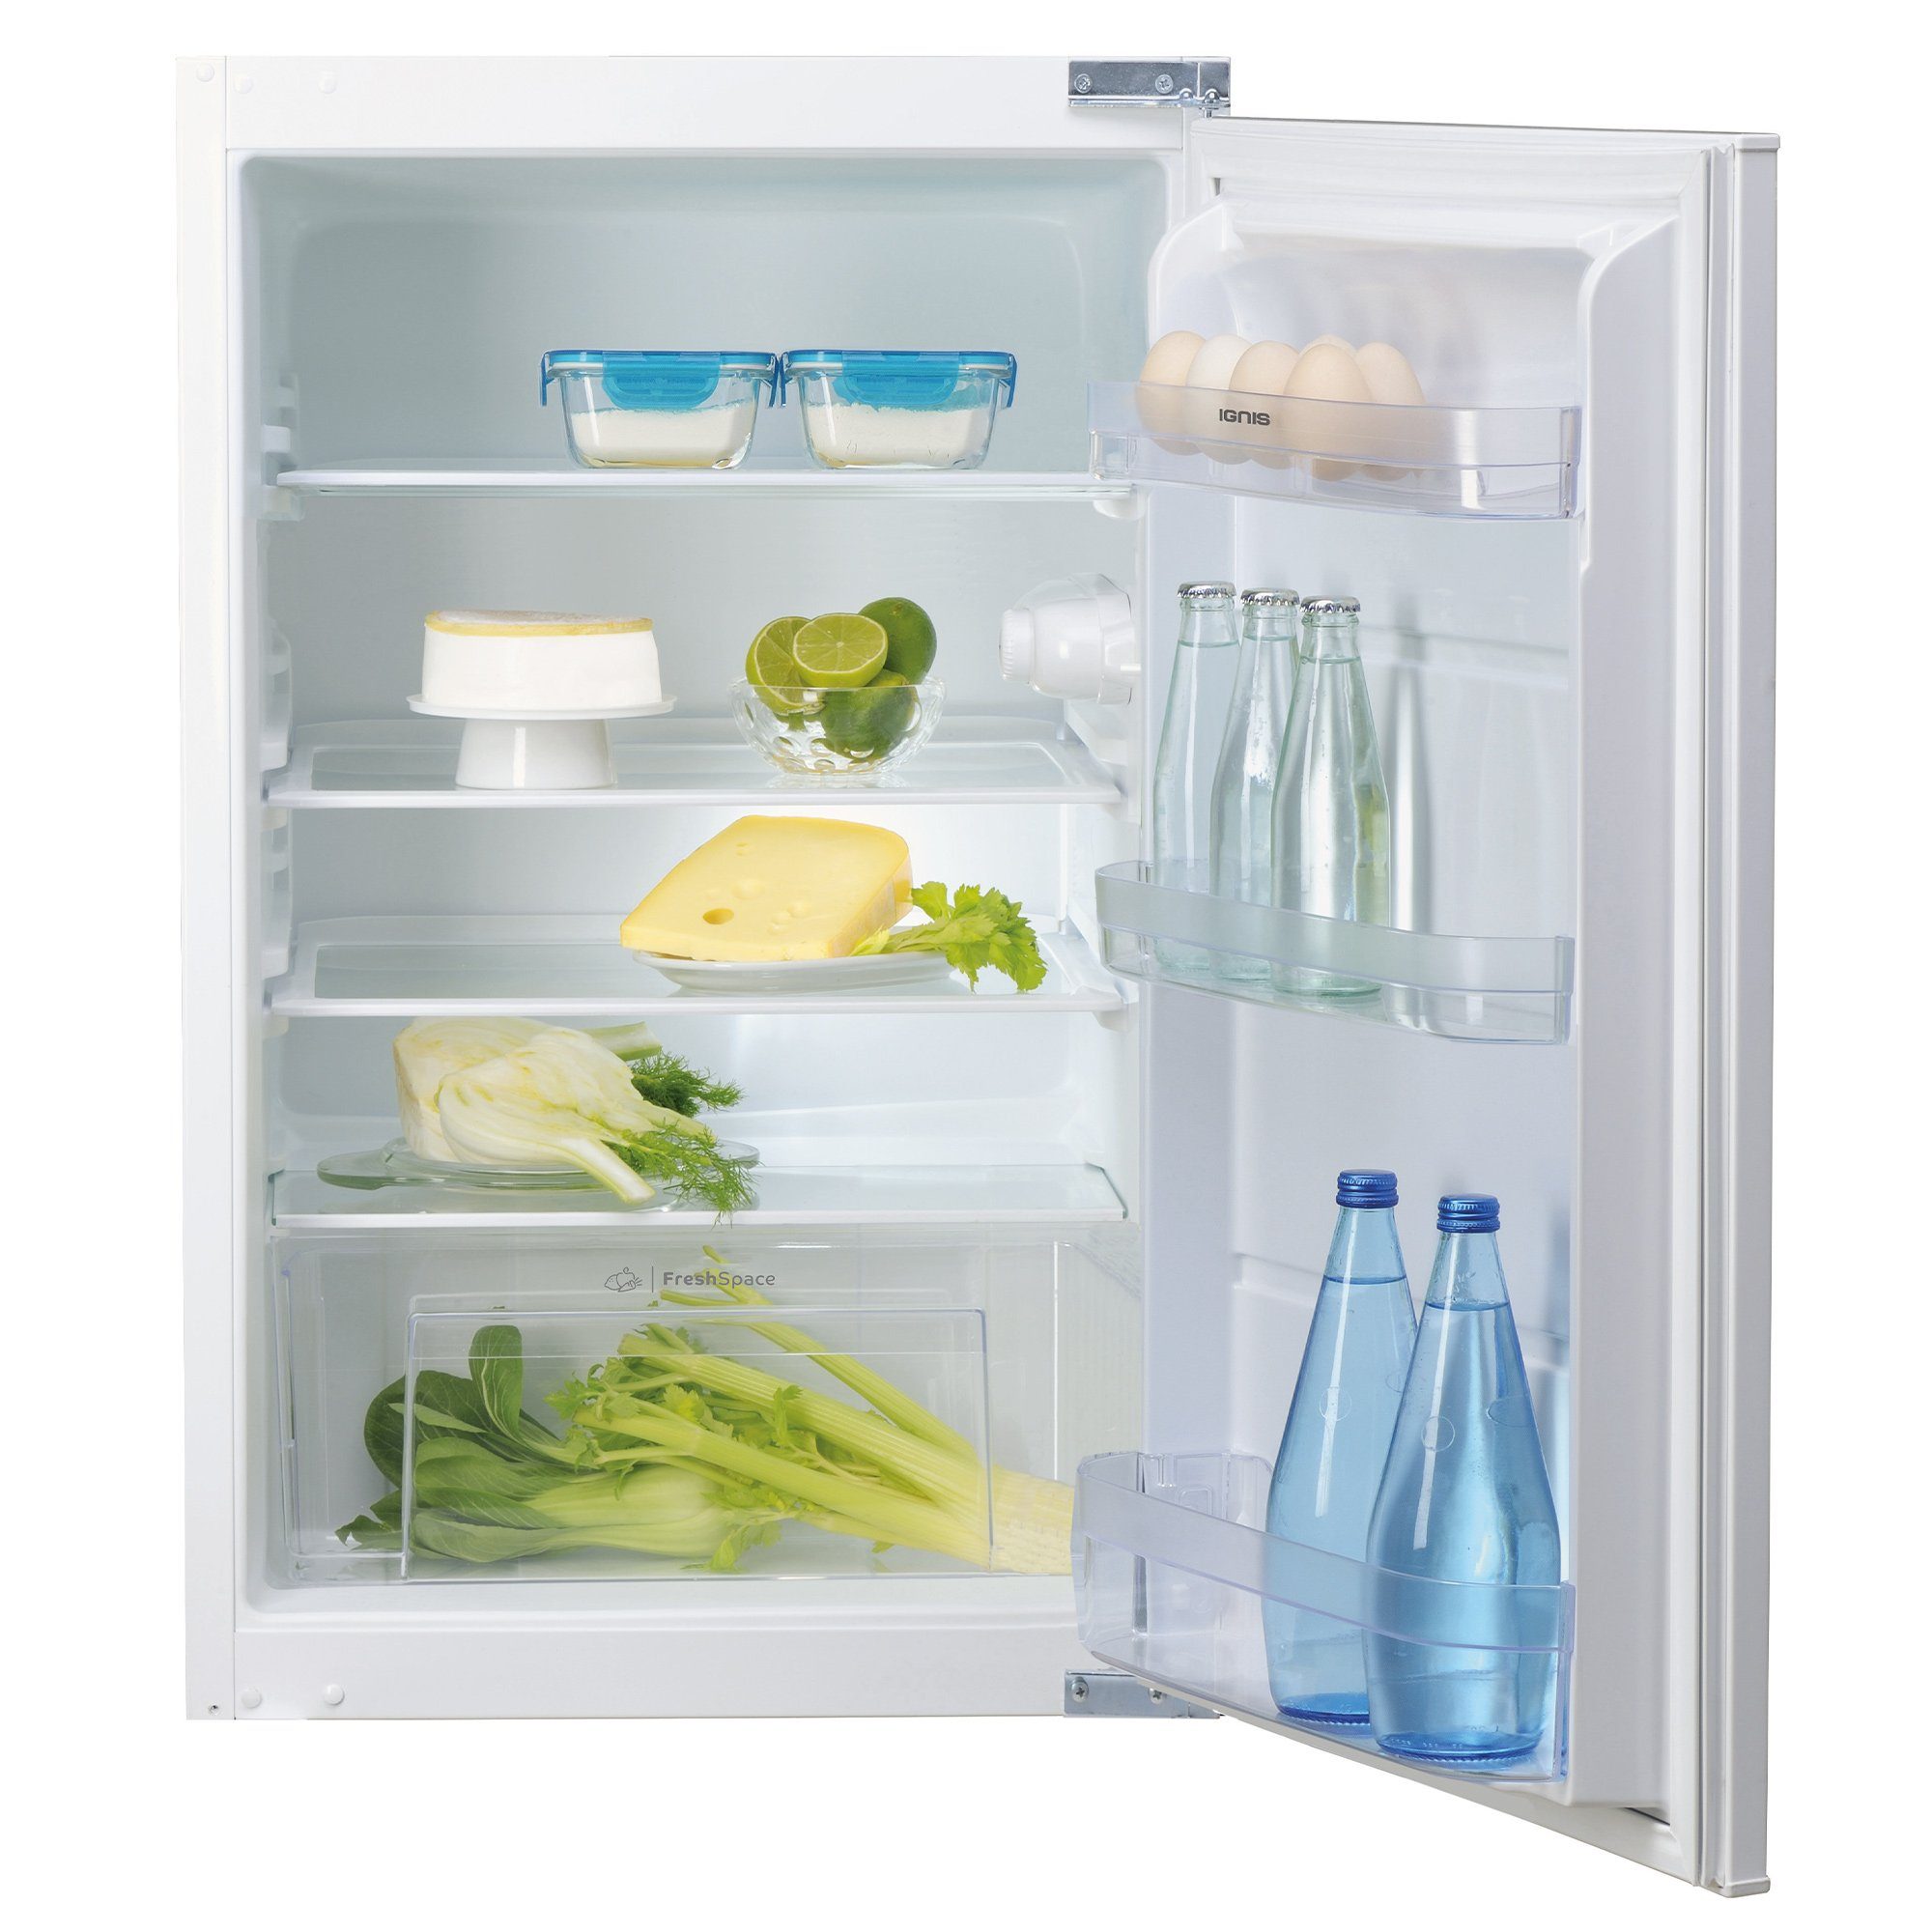 IGNIS Einbaukühlschrank ARL 9VS2, 87,5 cm hoch, 54 cm breit, 3 Türfächer, 3 Ablagen, Abtauautomatik im Kühlteil